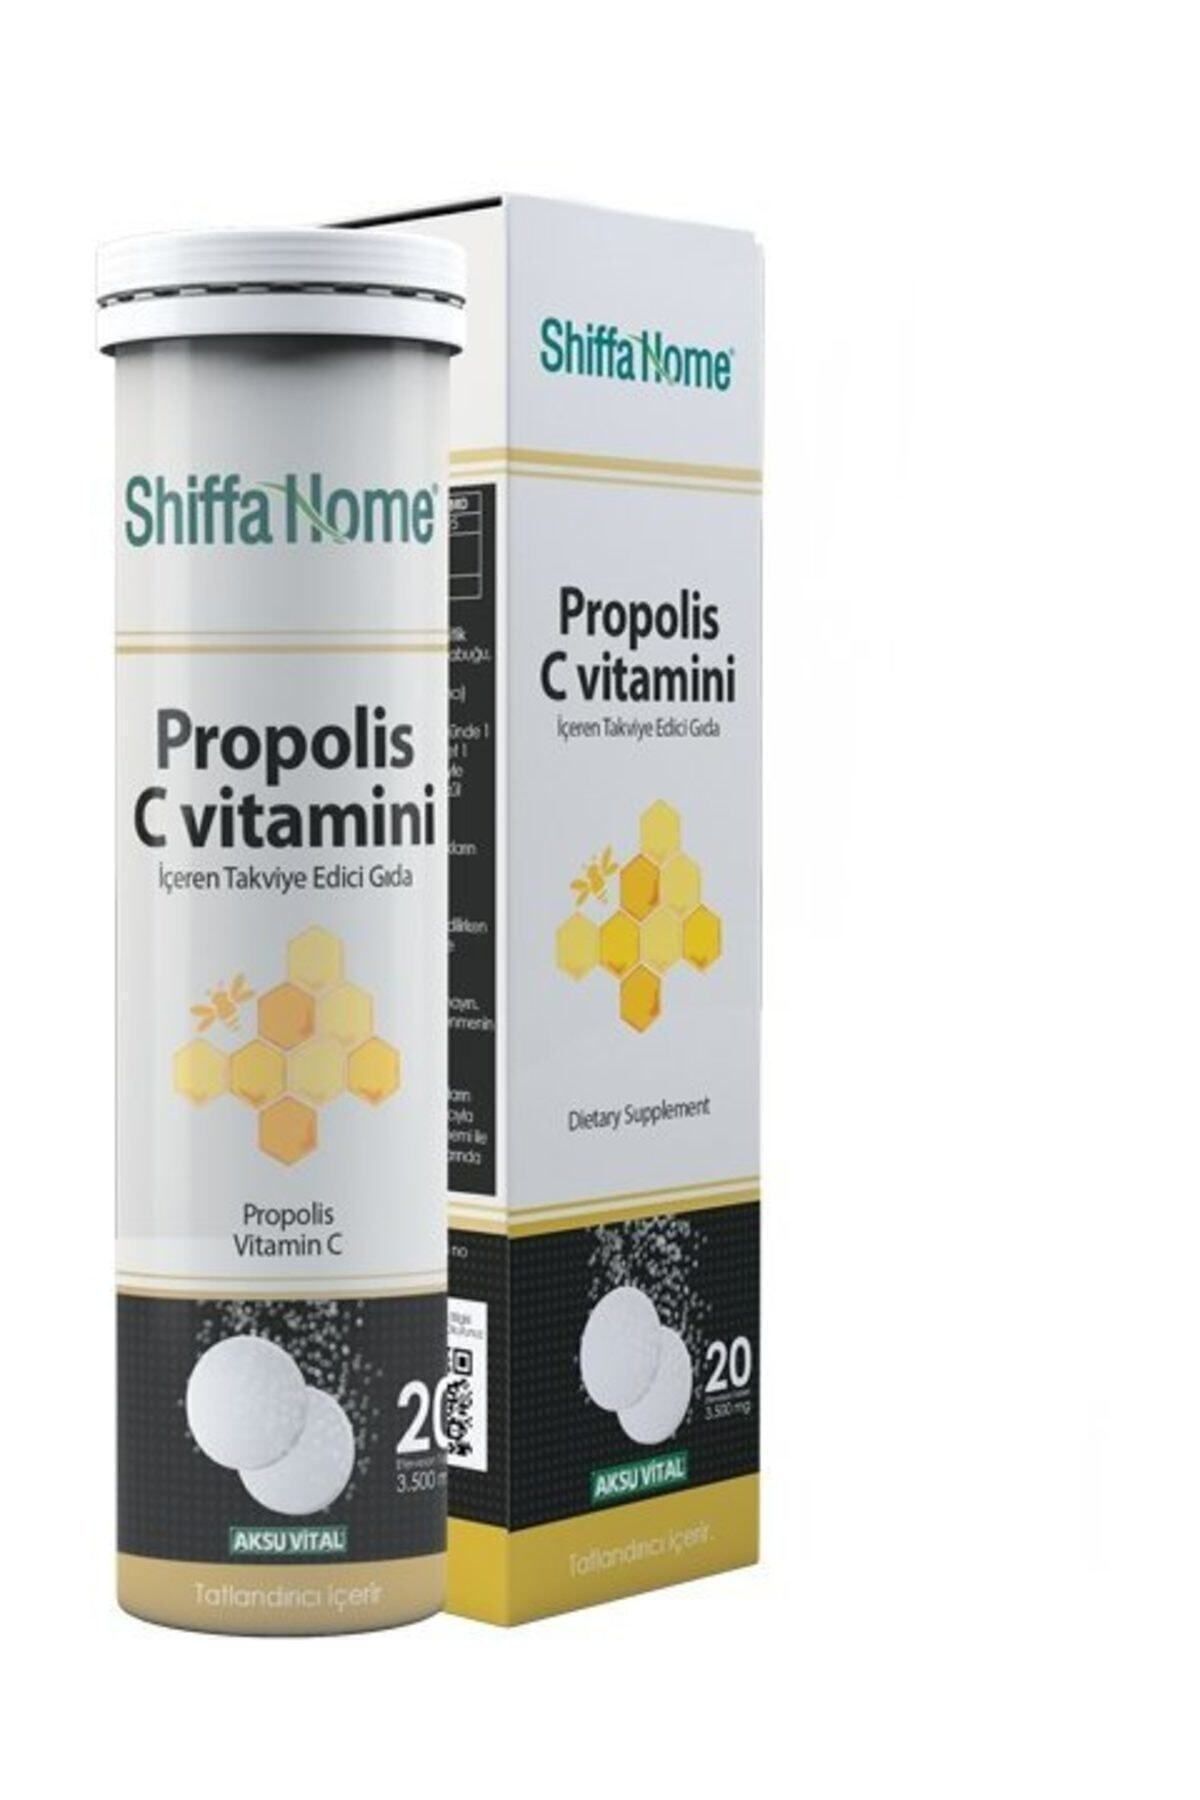 Shiffa Home Propolis C Vitamini 3500 Mg 20 Efervesan Tablet